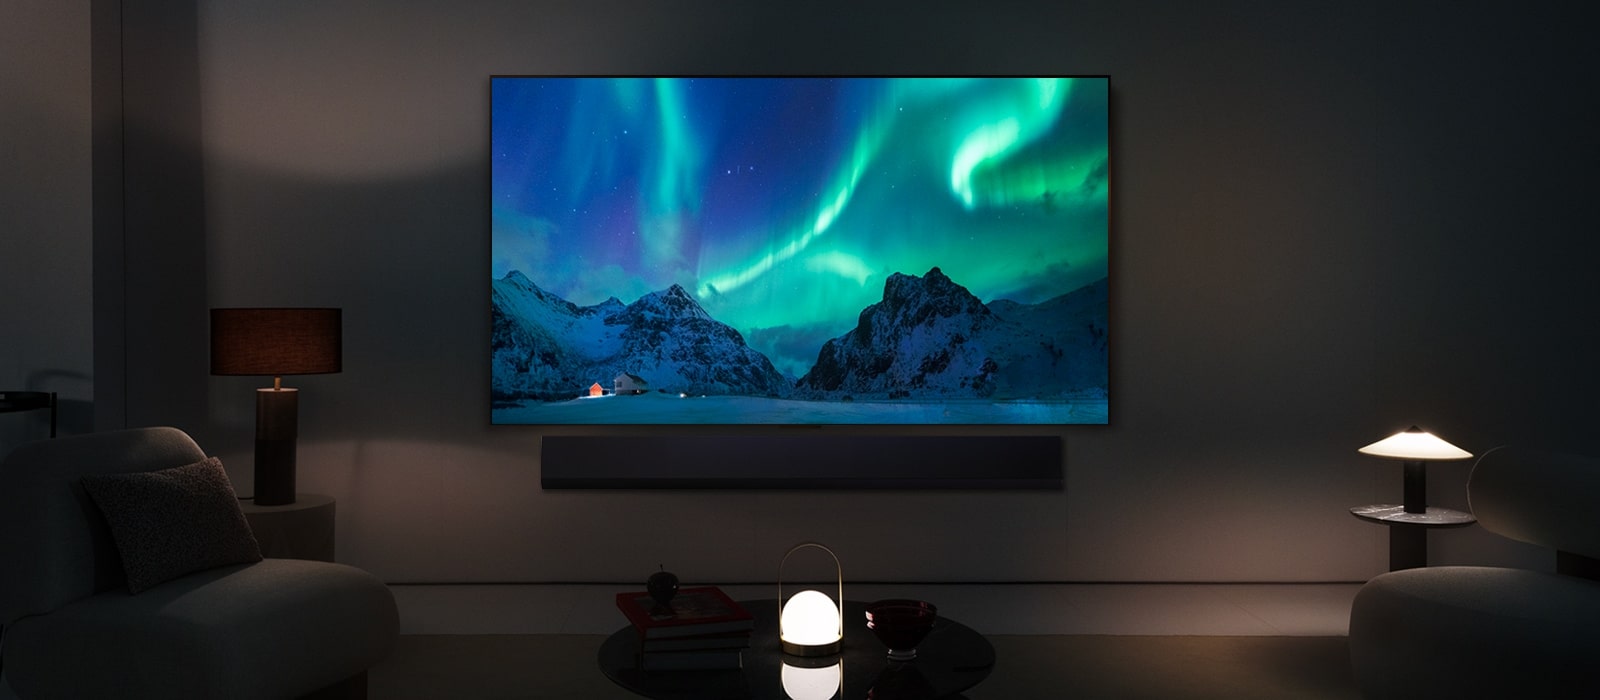 Μια LG OLED TV και ένα LG Soundbar σε ένα σύγχρονο σαλόνι τη νύχτα. Εμφανίζεται μια εικόνα της οθόνης του Βόρειου Σέλας με τα ιδανικά επίπεδα φωτεινότητας.